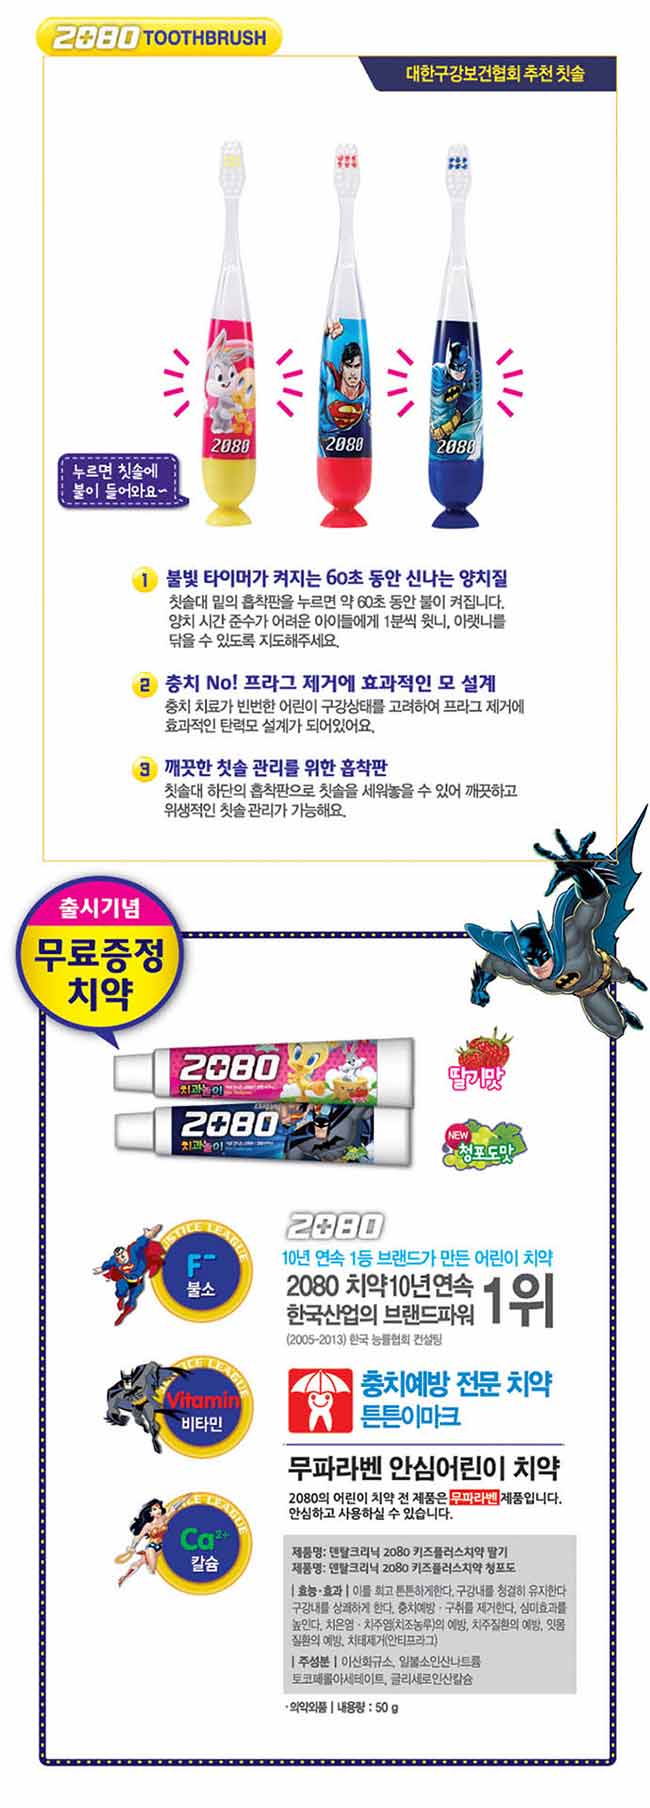 韓國2080 60秒計時器LED燈附吸盤蝙蝠俠卡通兒童牙刷